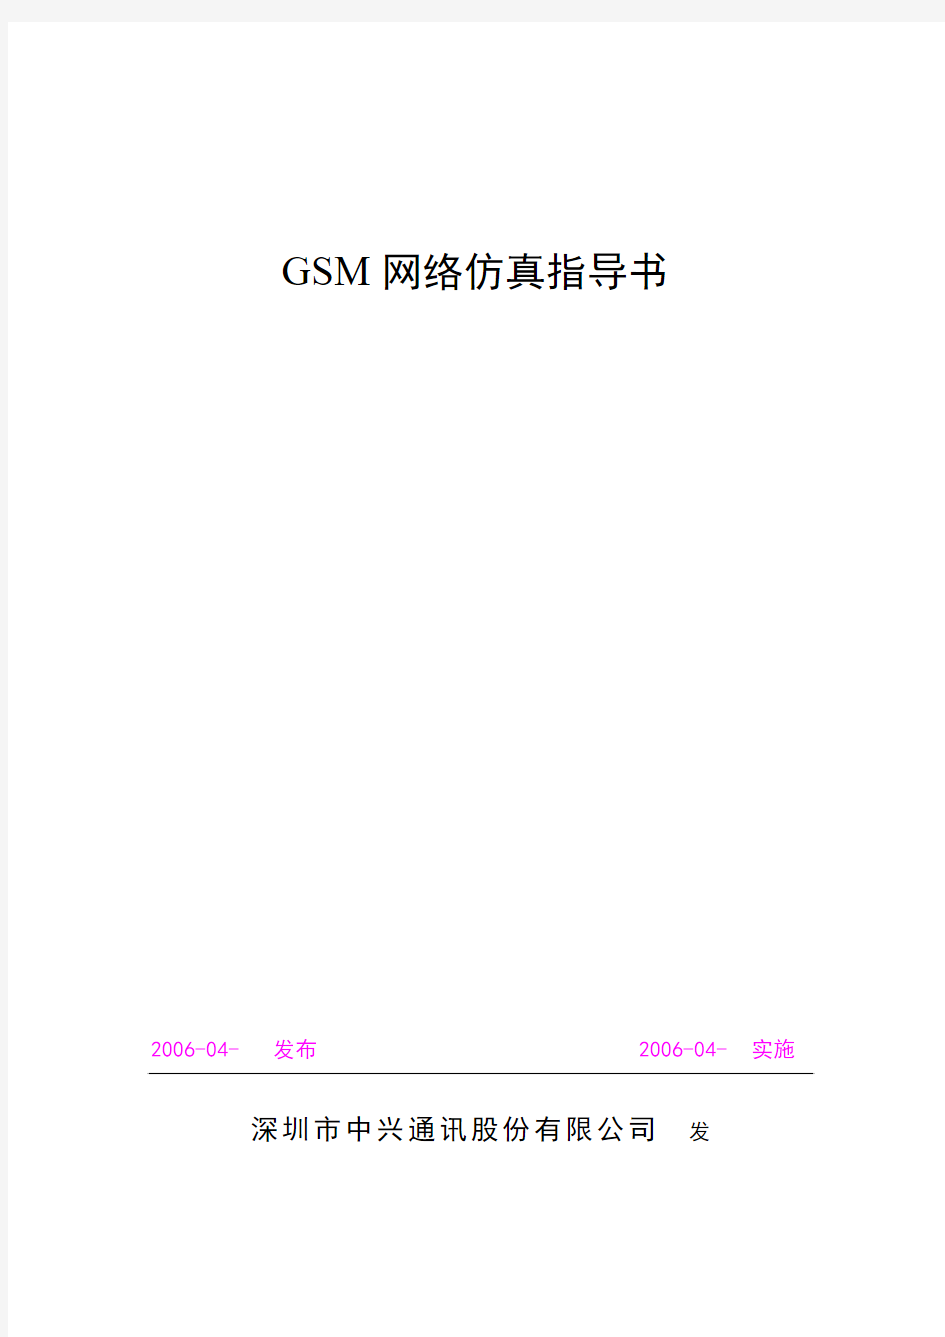 移动网络网优部GSM网络仿真工作指导书